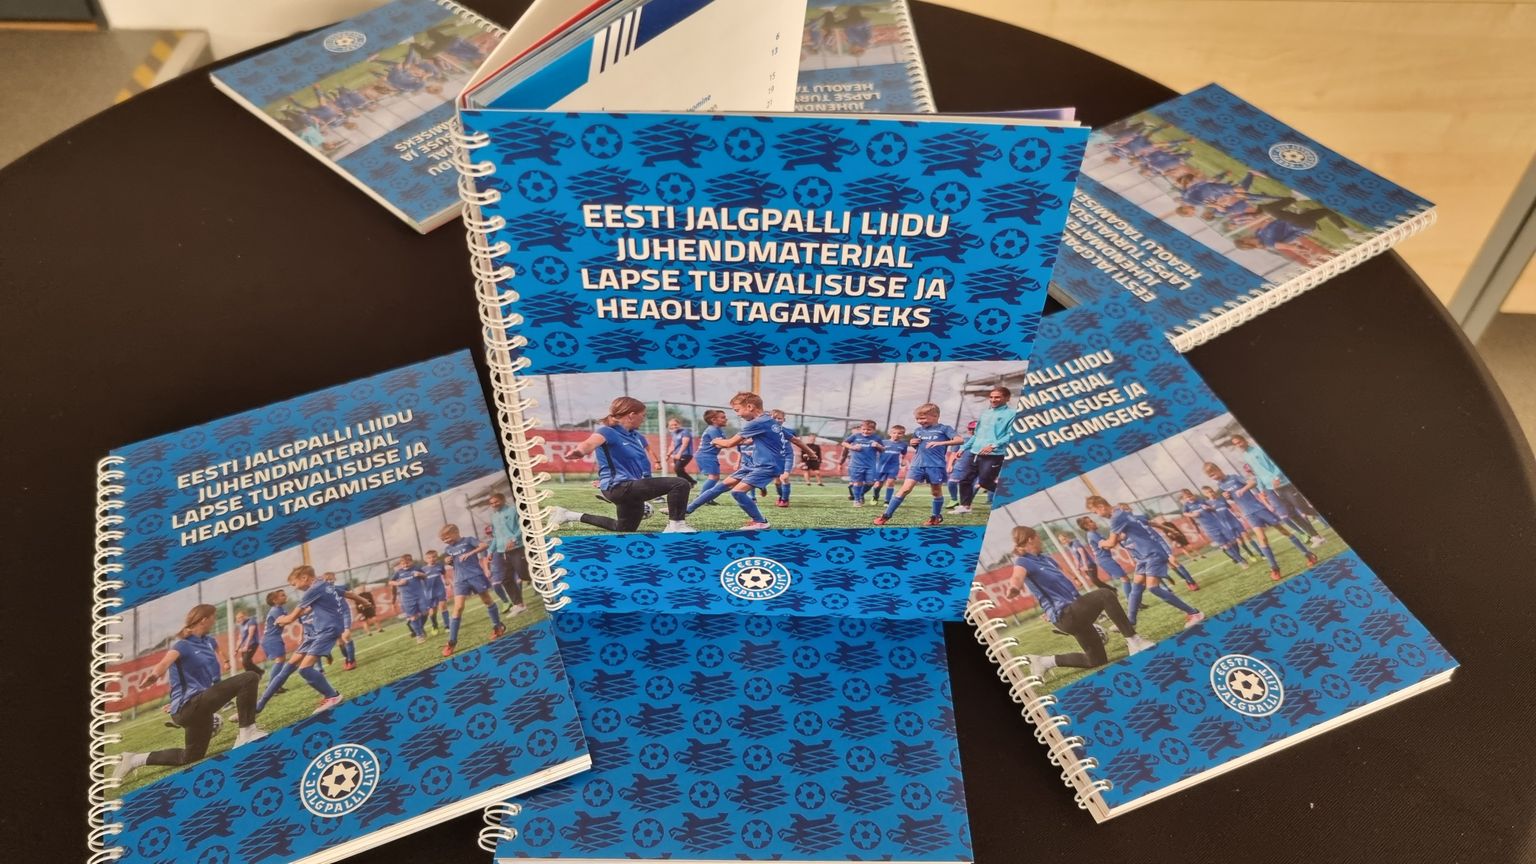 Eesti Jalgpalli Liidu juhendmaterjal lapse turvalisuse ja heaolu tagamiseks.